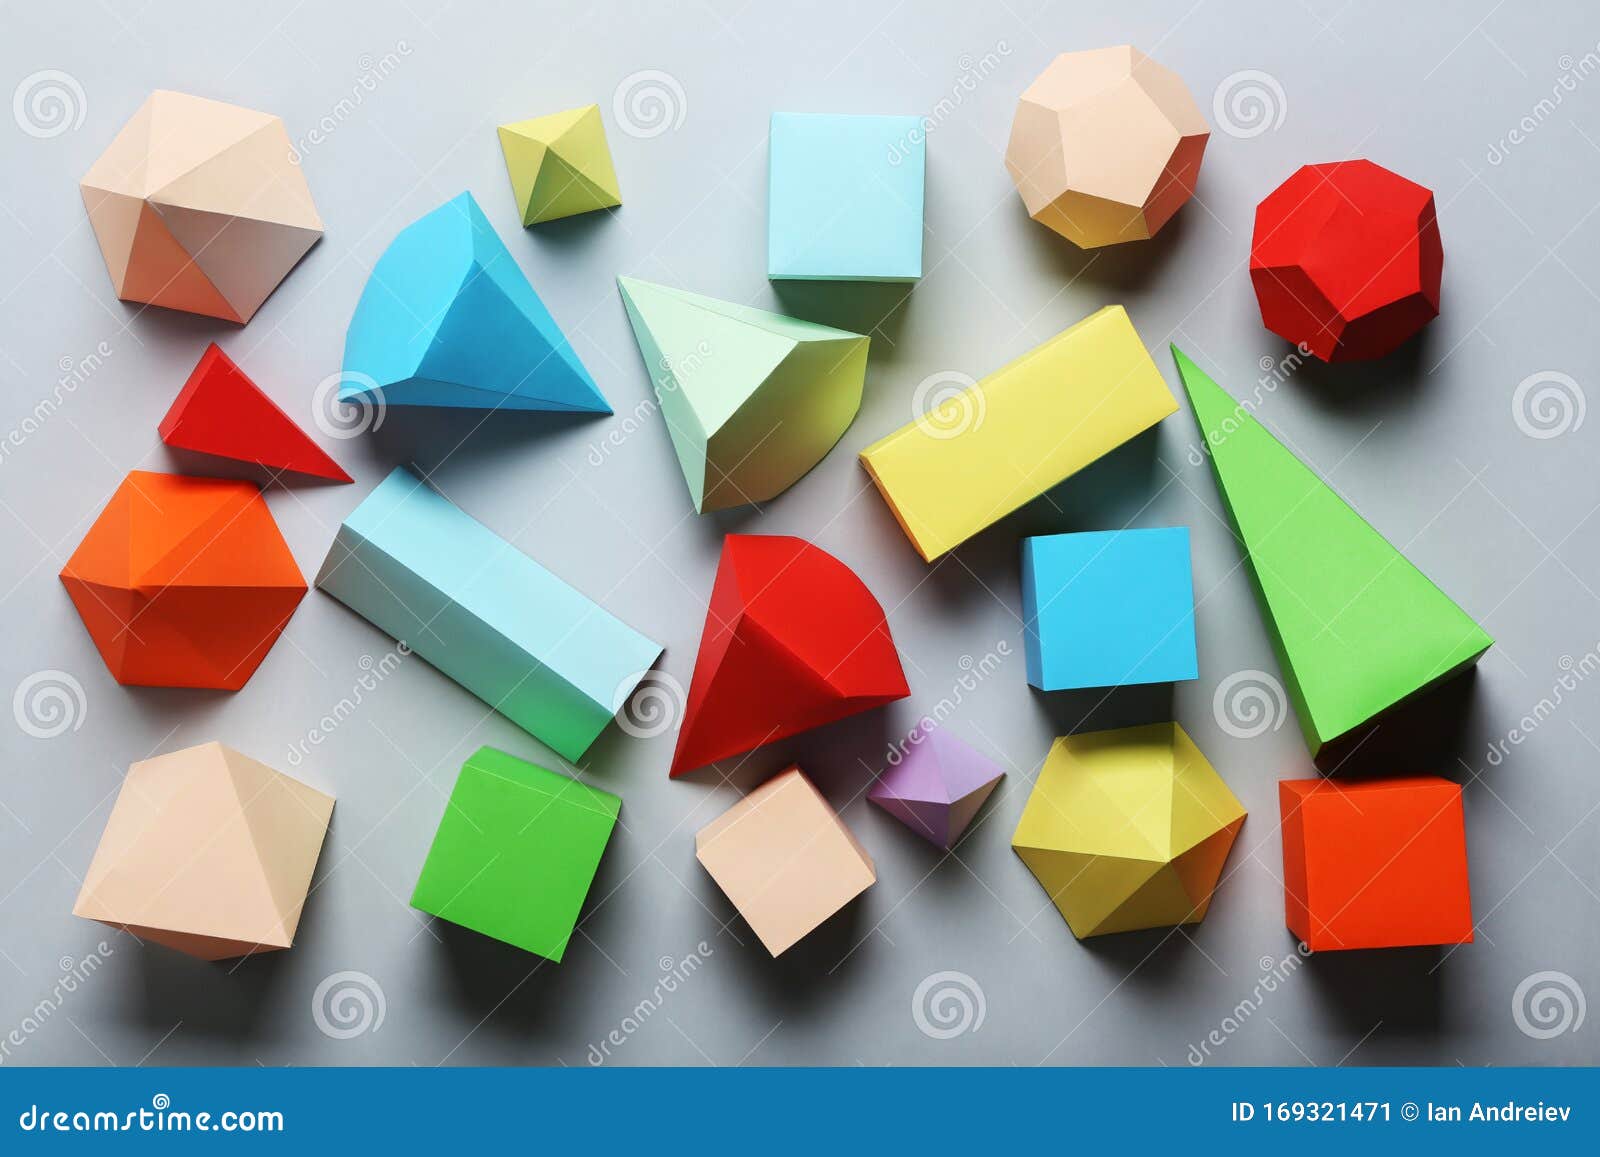 Farbige Geometrische Figuren Aus Papier Stockbild Bild Von Figuren Geometrische